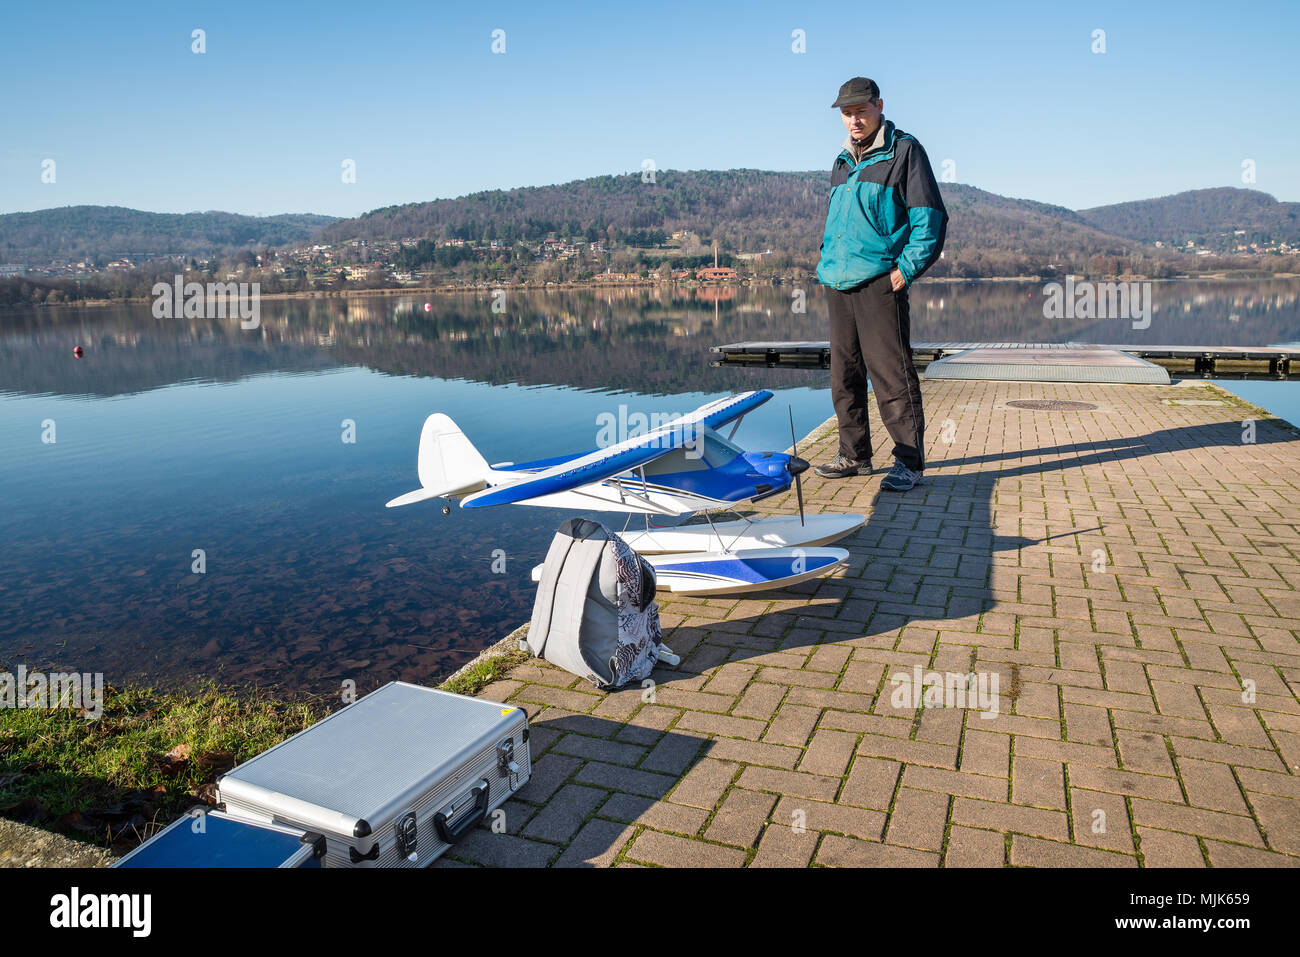 Radio gesteuert (RC) mit dem Wasserflugzeug. Wasserflugzeug Modell am Ufer eines Sees bereit zu fliegen. Lago di Comabbio, Corgeno, Italien Stockfoto